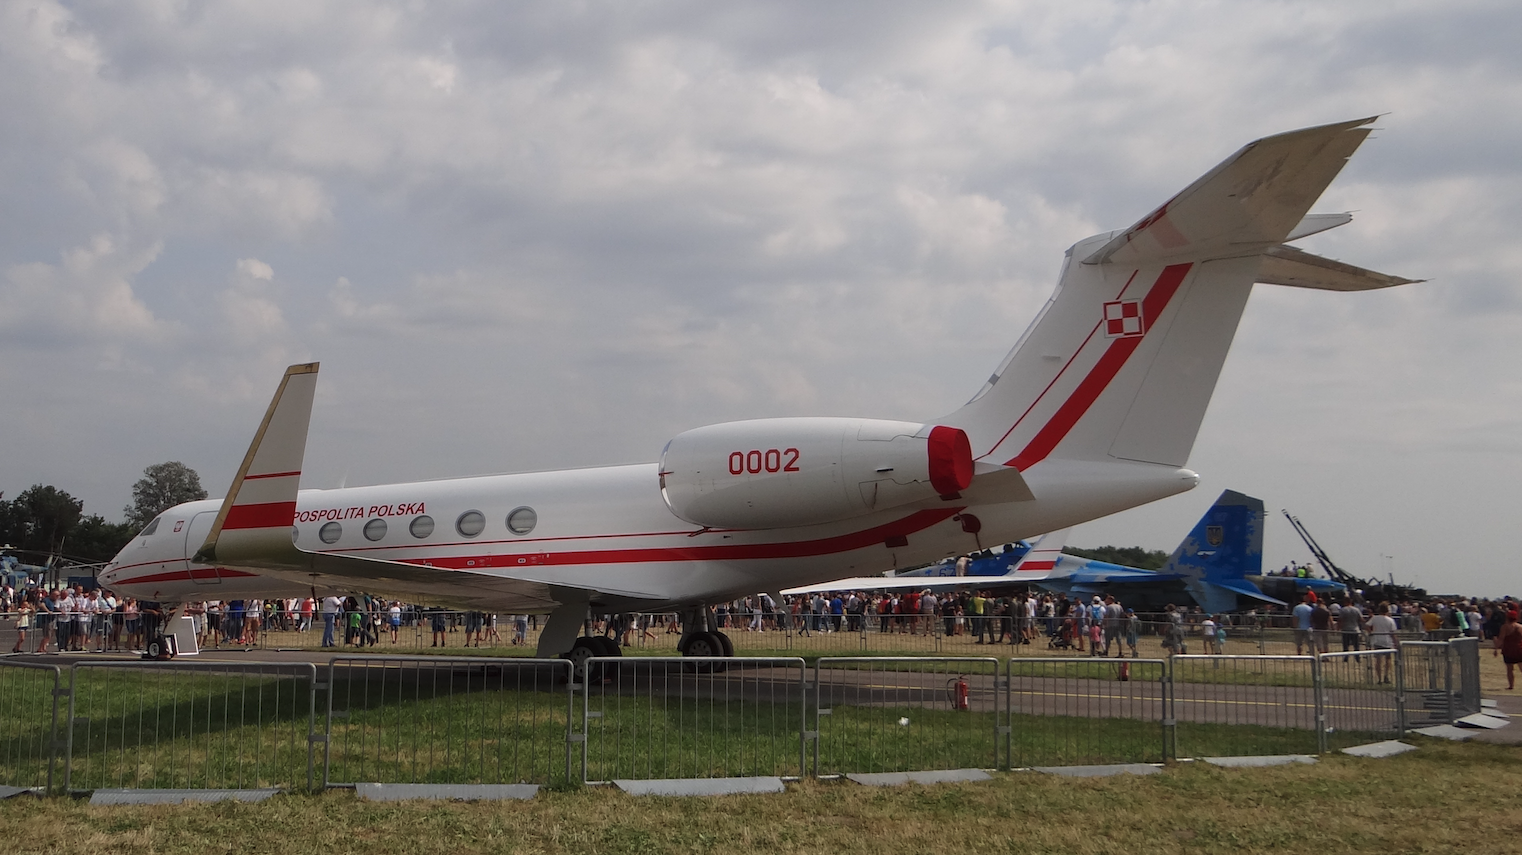 G550 Gulfstream Aerospace Nb 0002 "Generał Kazimierz Pułaski”. 2017 rok. Zdjęcie Karol Placha Hetman